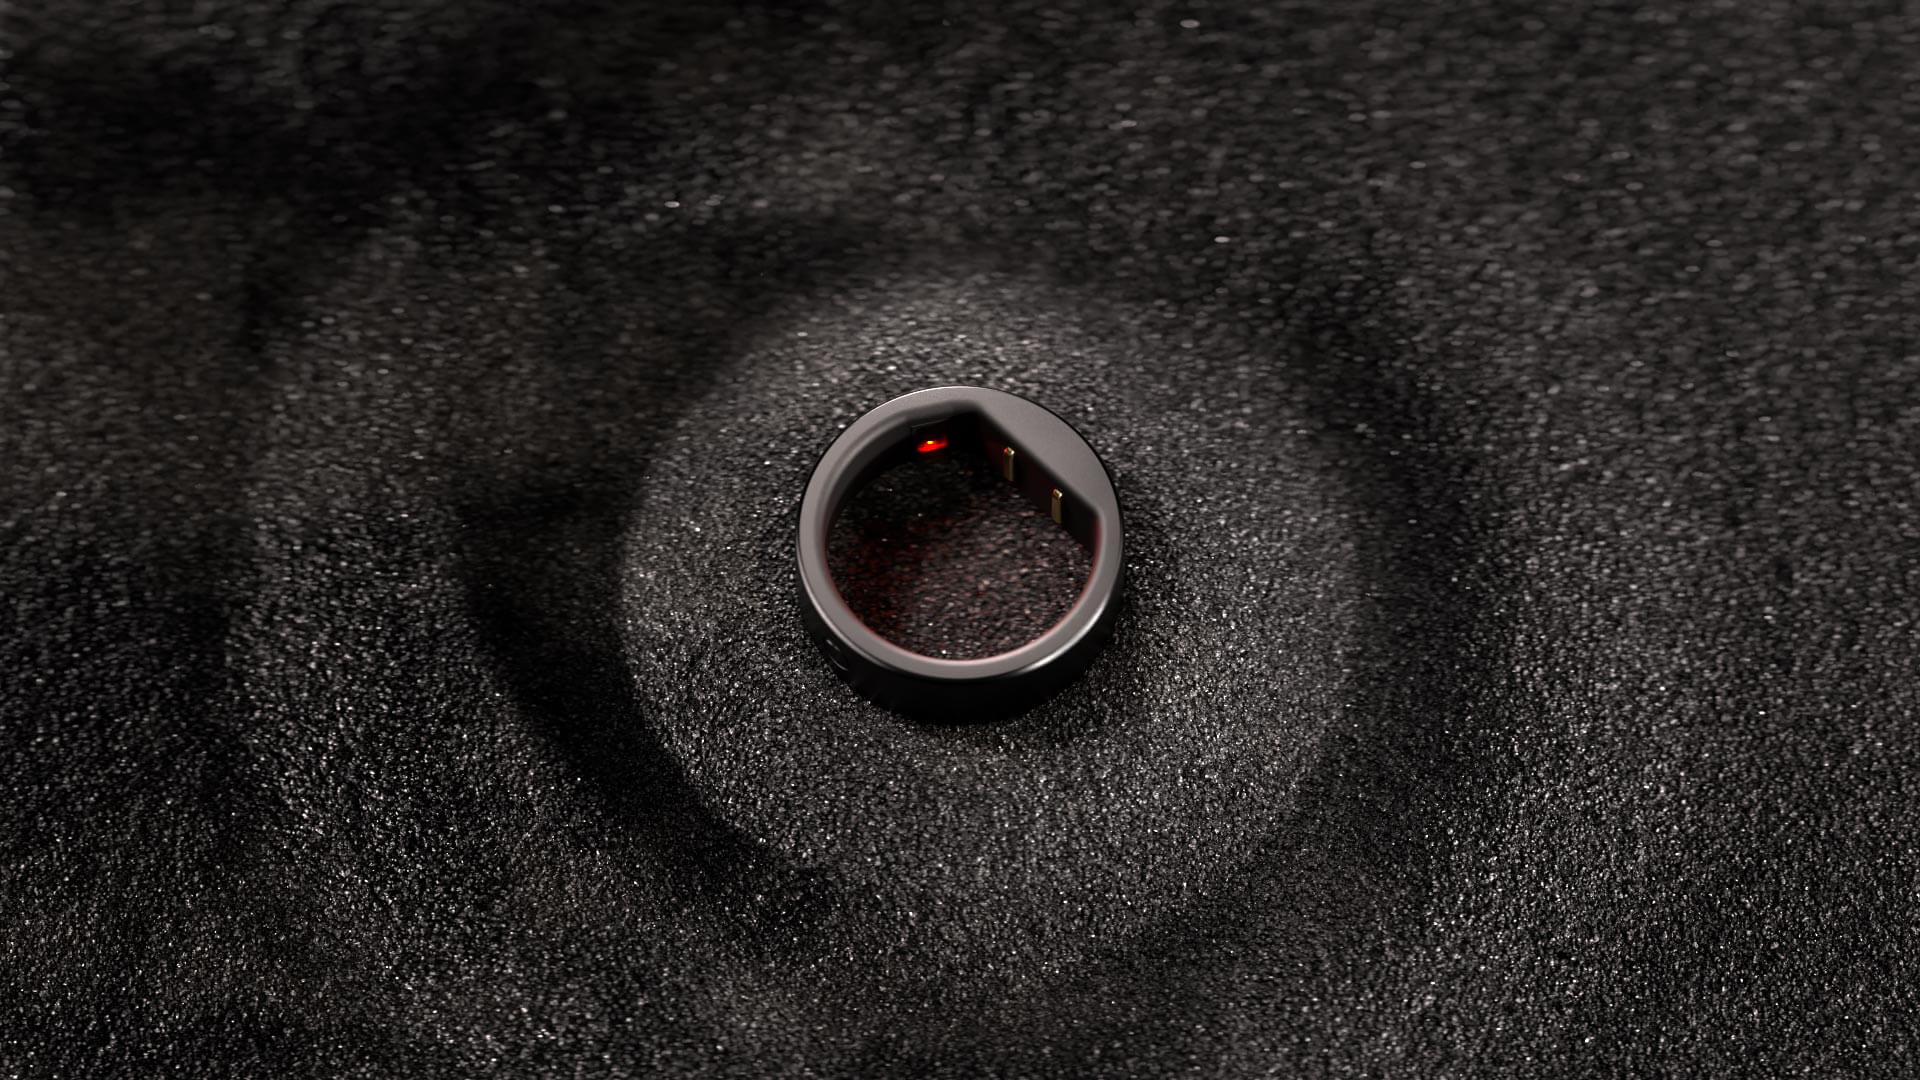 Circular presenta el anillo inteligente más pequeño del mundo